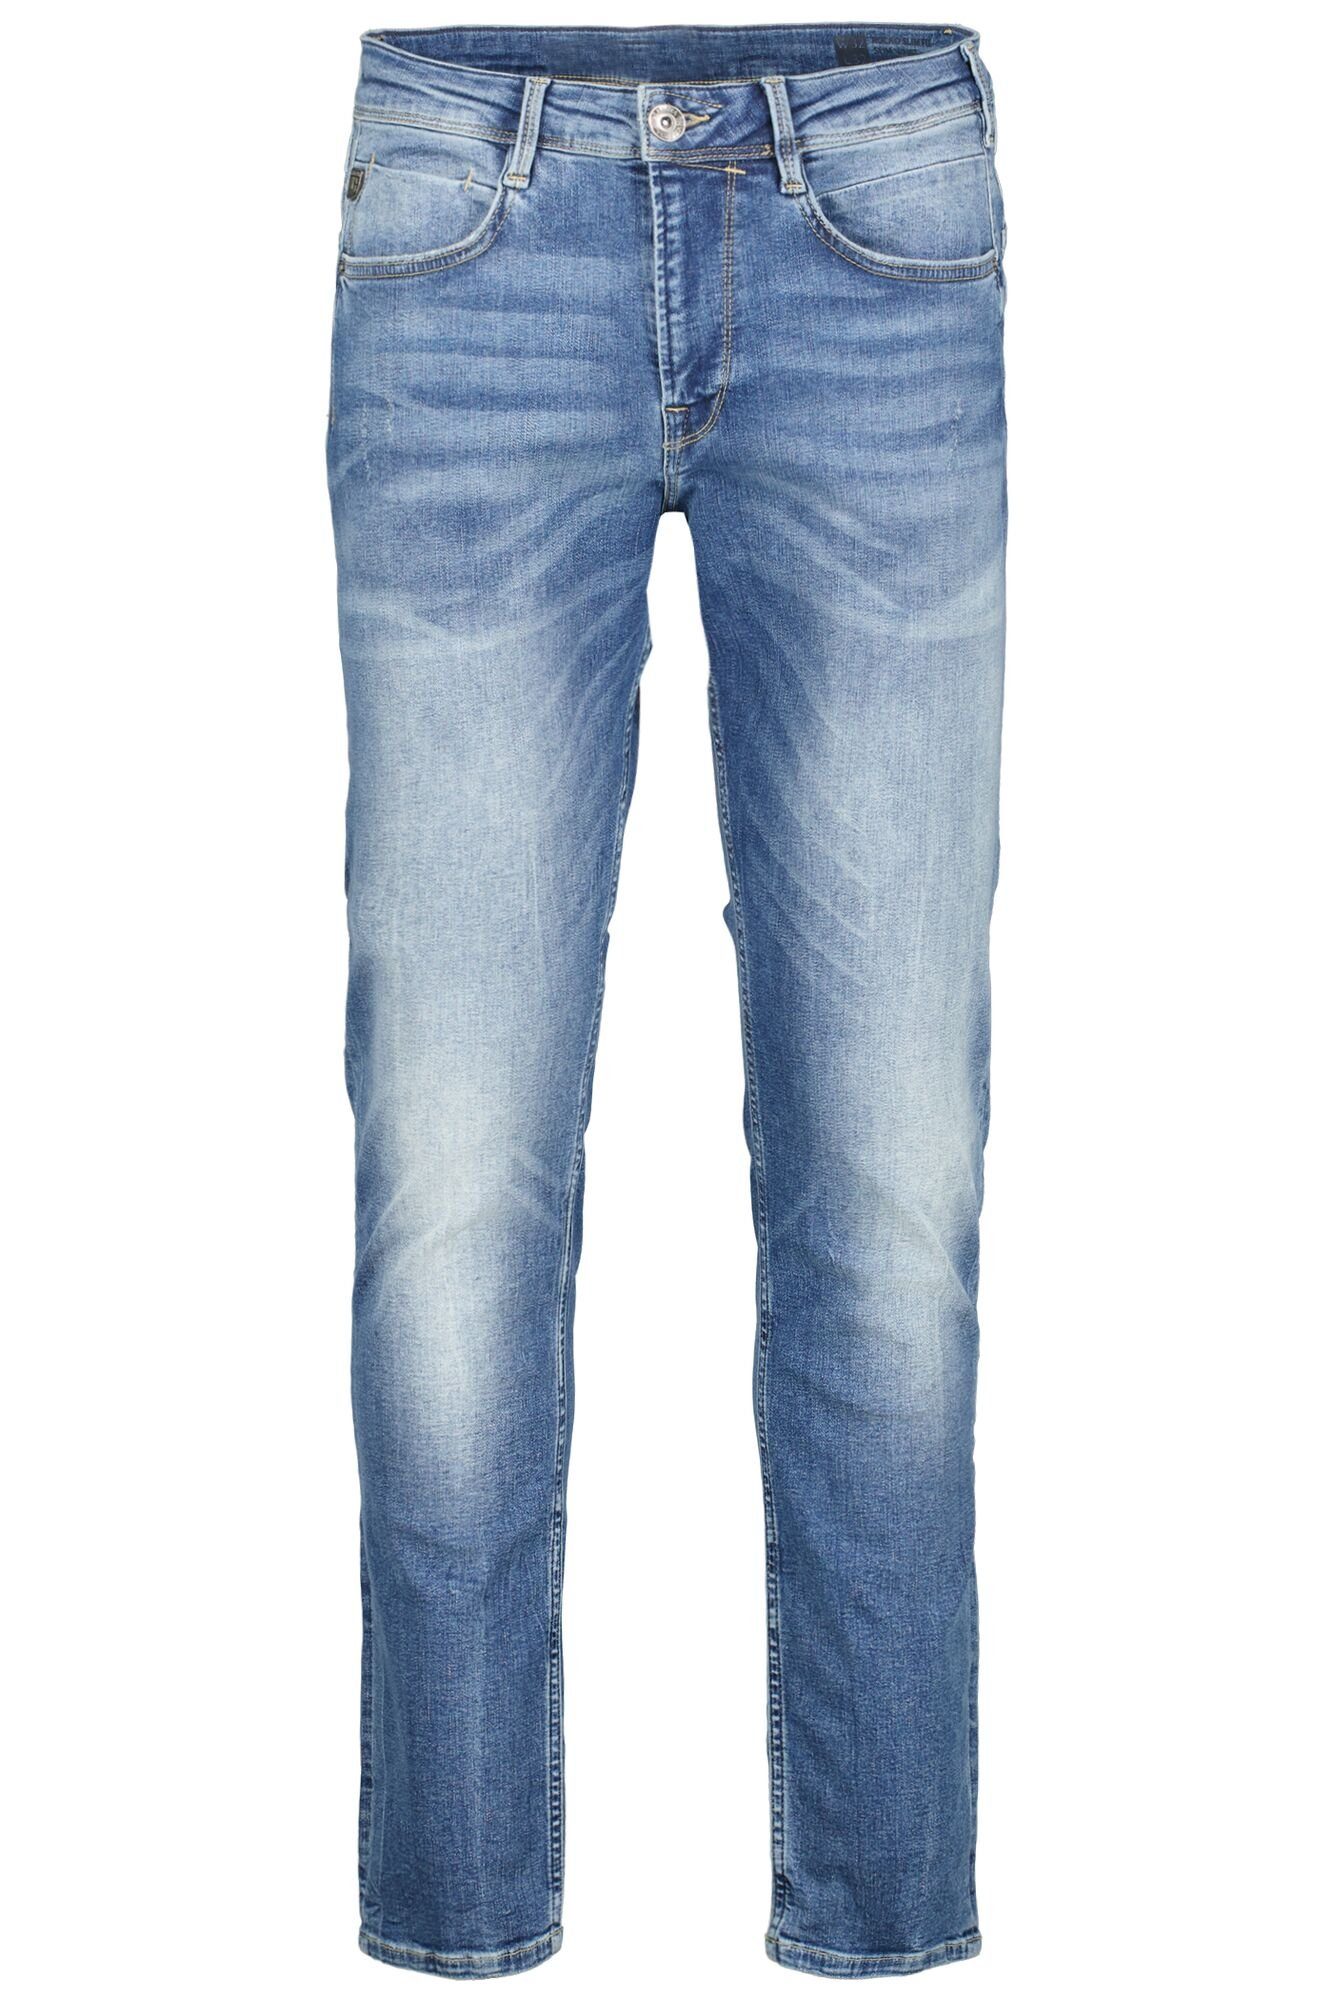 blue Garcia 5-Pocket-Jeans verschiedenen vintage used in Rocko Waschungen